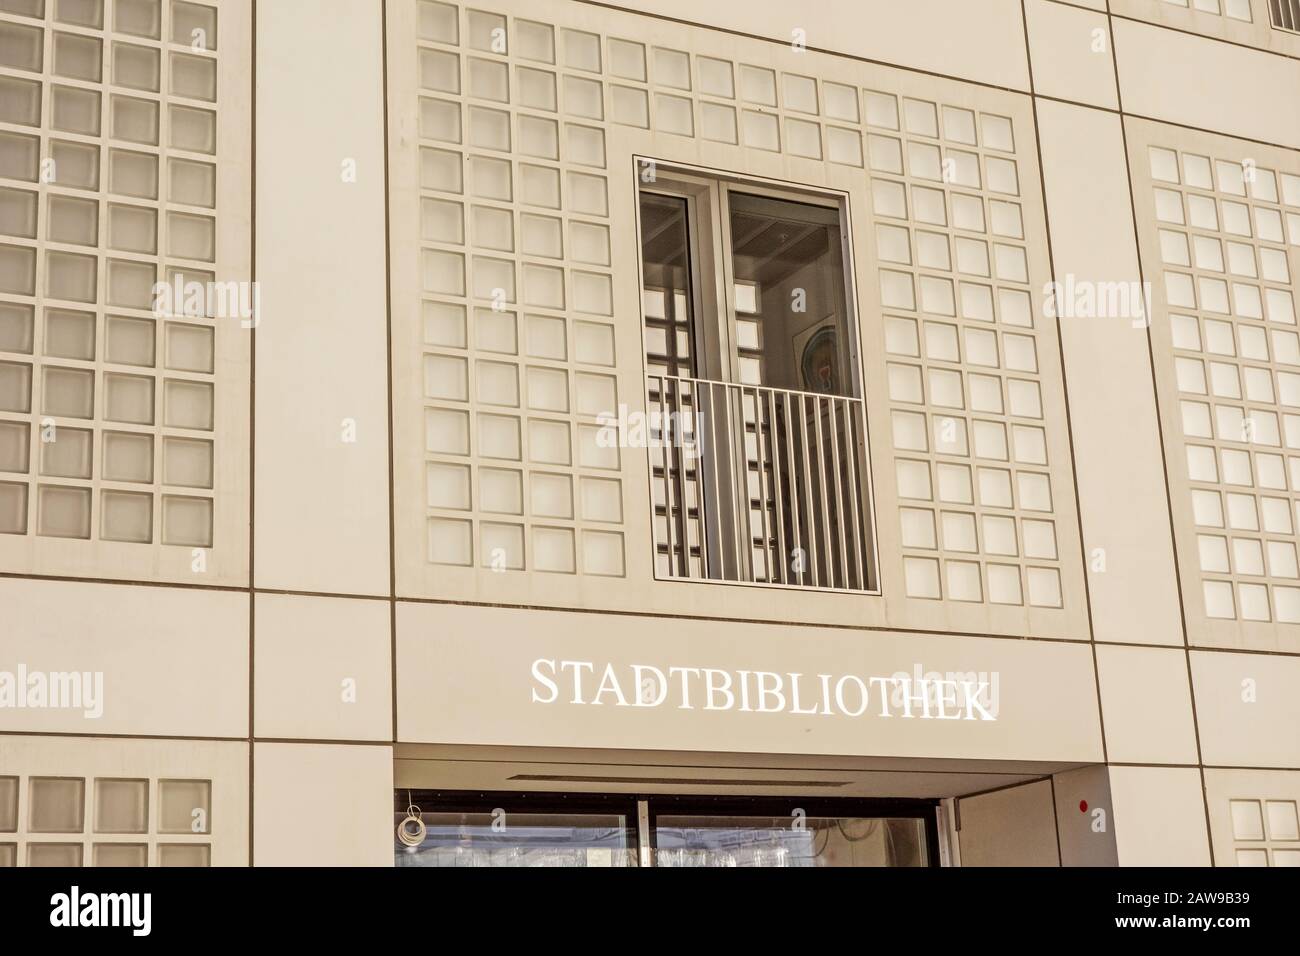 Stoccarda, Germania - 1° novembre 2015: La nuova biblioteca pubblica municipale di Stoccarda, Germania - vista esterna. Fornisce più di 500.000 libri. It Foto Stock